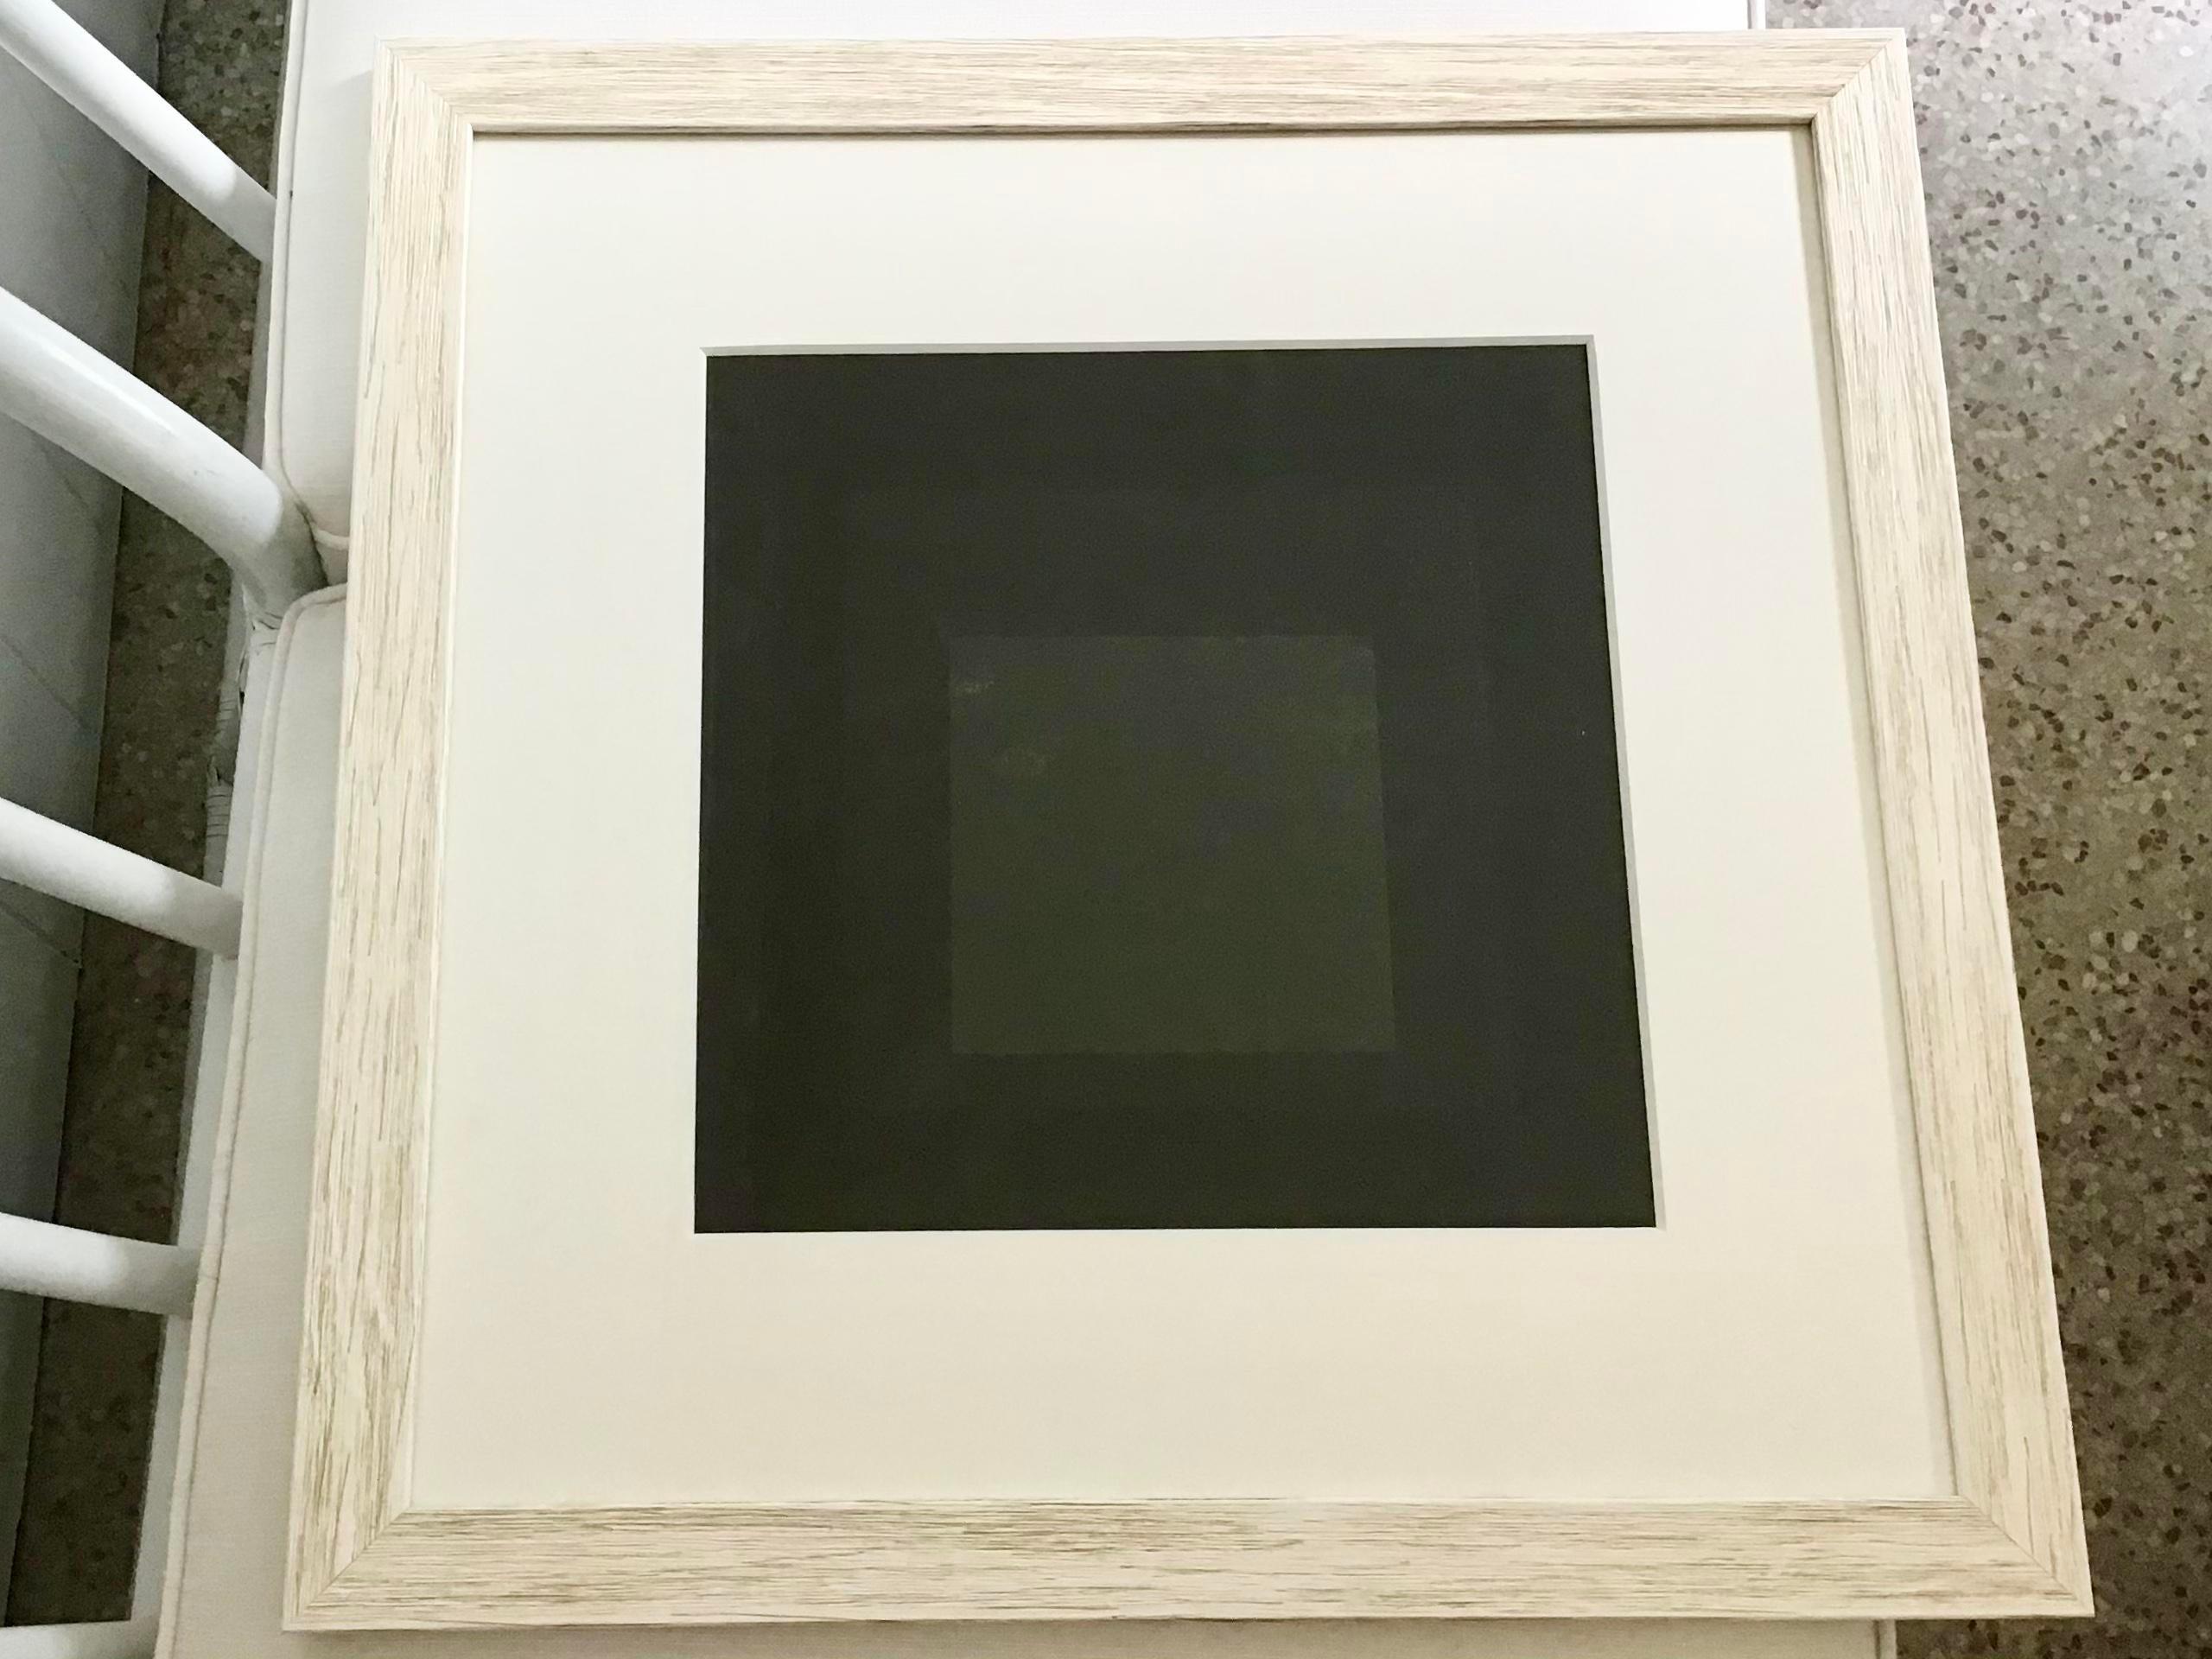 Sehr seltene Josef Albers dunkle Farben Lithographie Kunstwerk. Ergänzen Sie Ihre Innenräume mit moderner Kunst. Schöner neuer weiß gewaschener Rahmen.

Abmessungen des Kunstwerks: 16